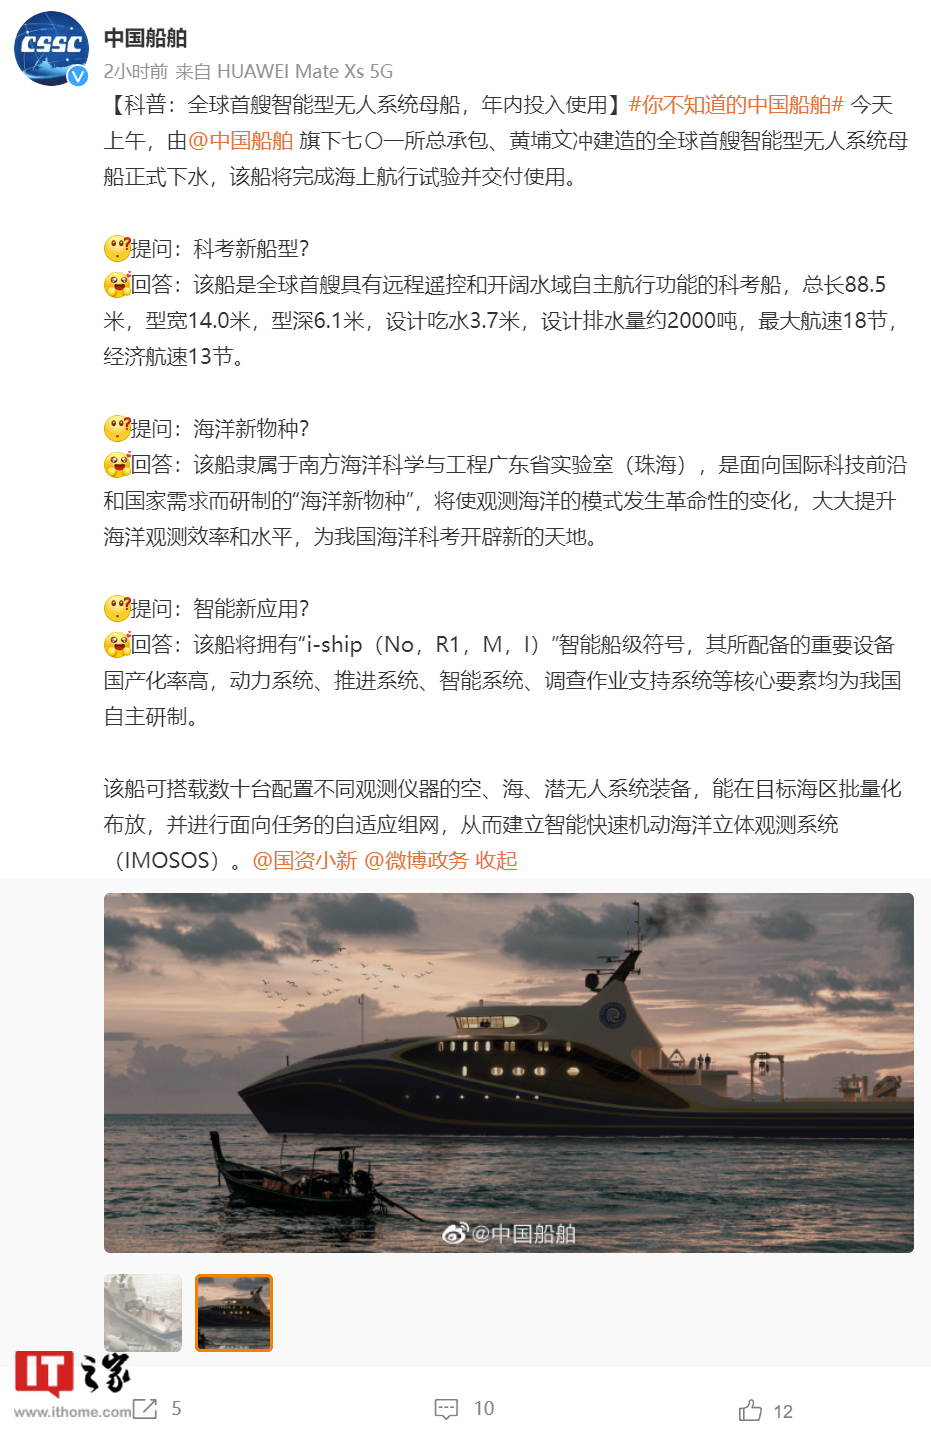 中国船舶微博